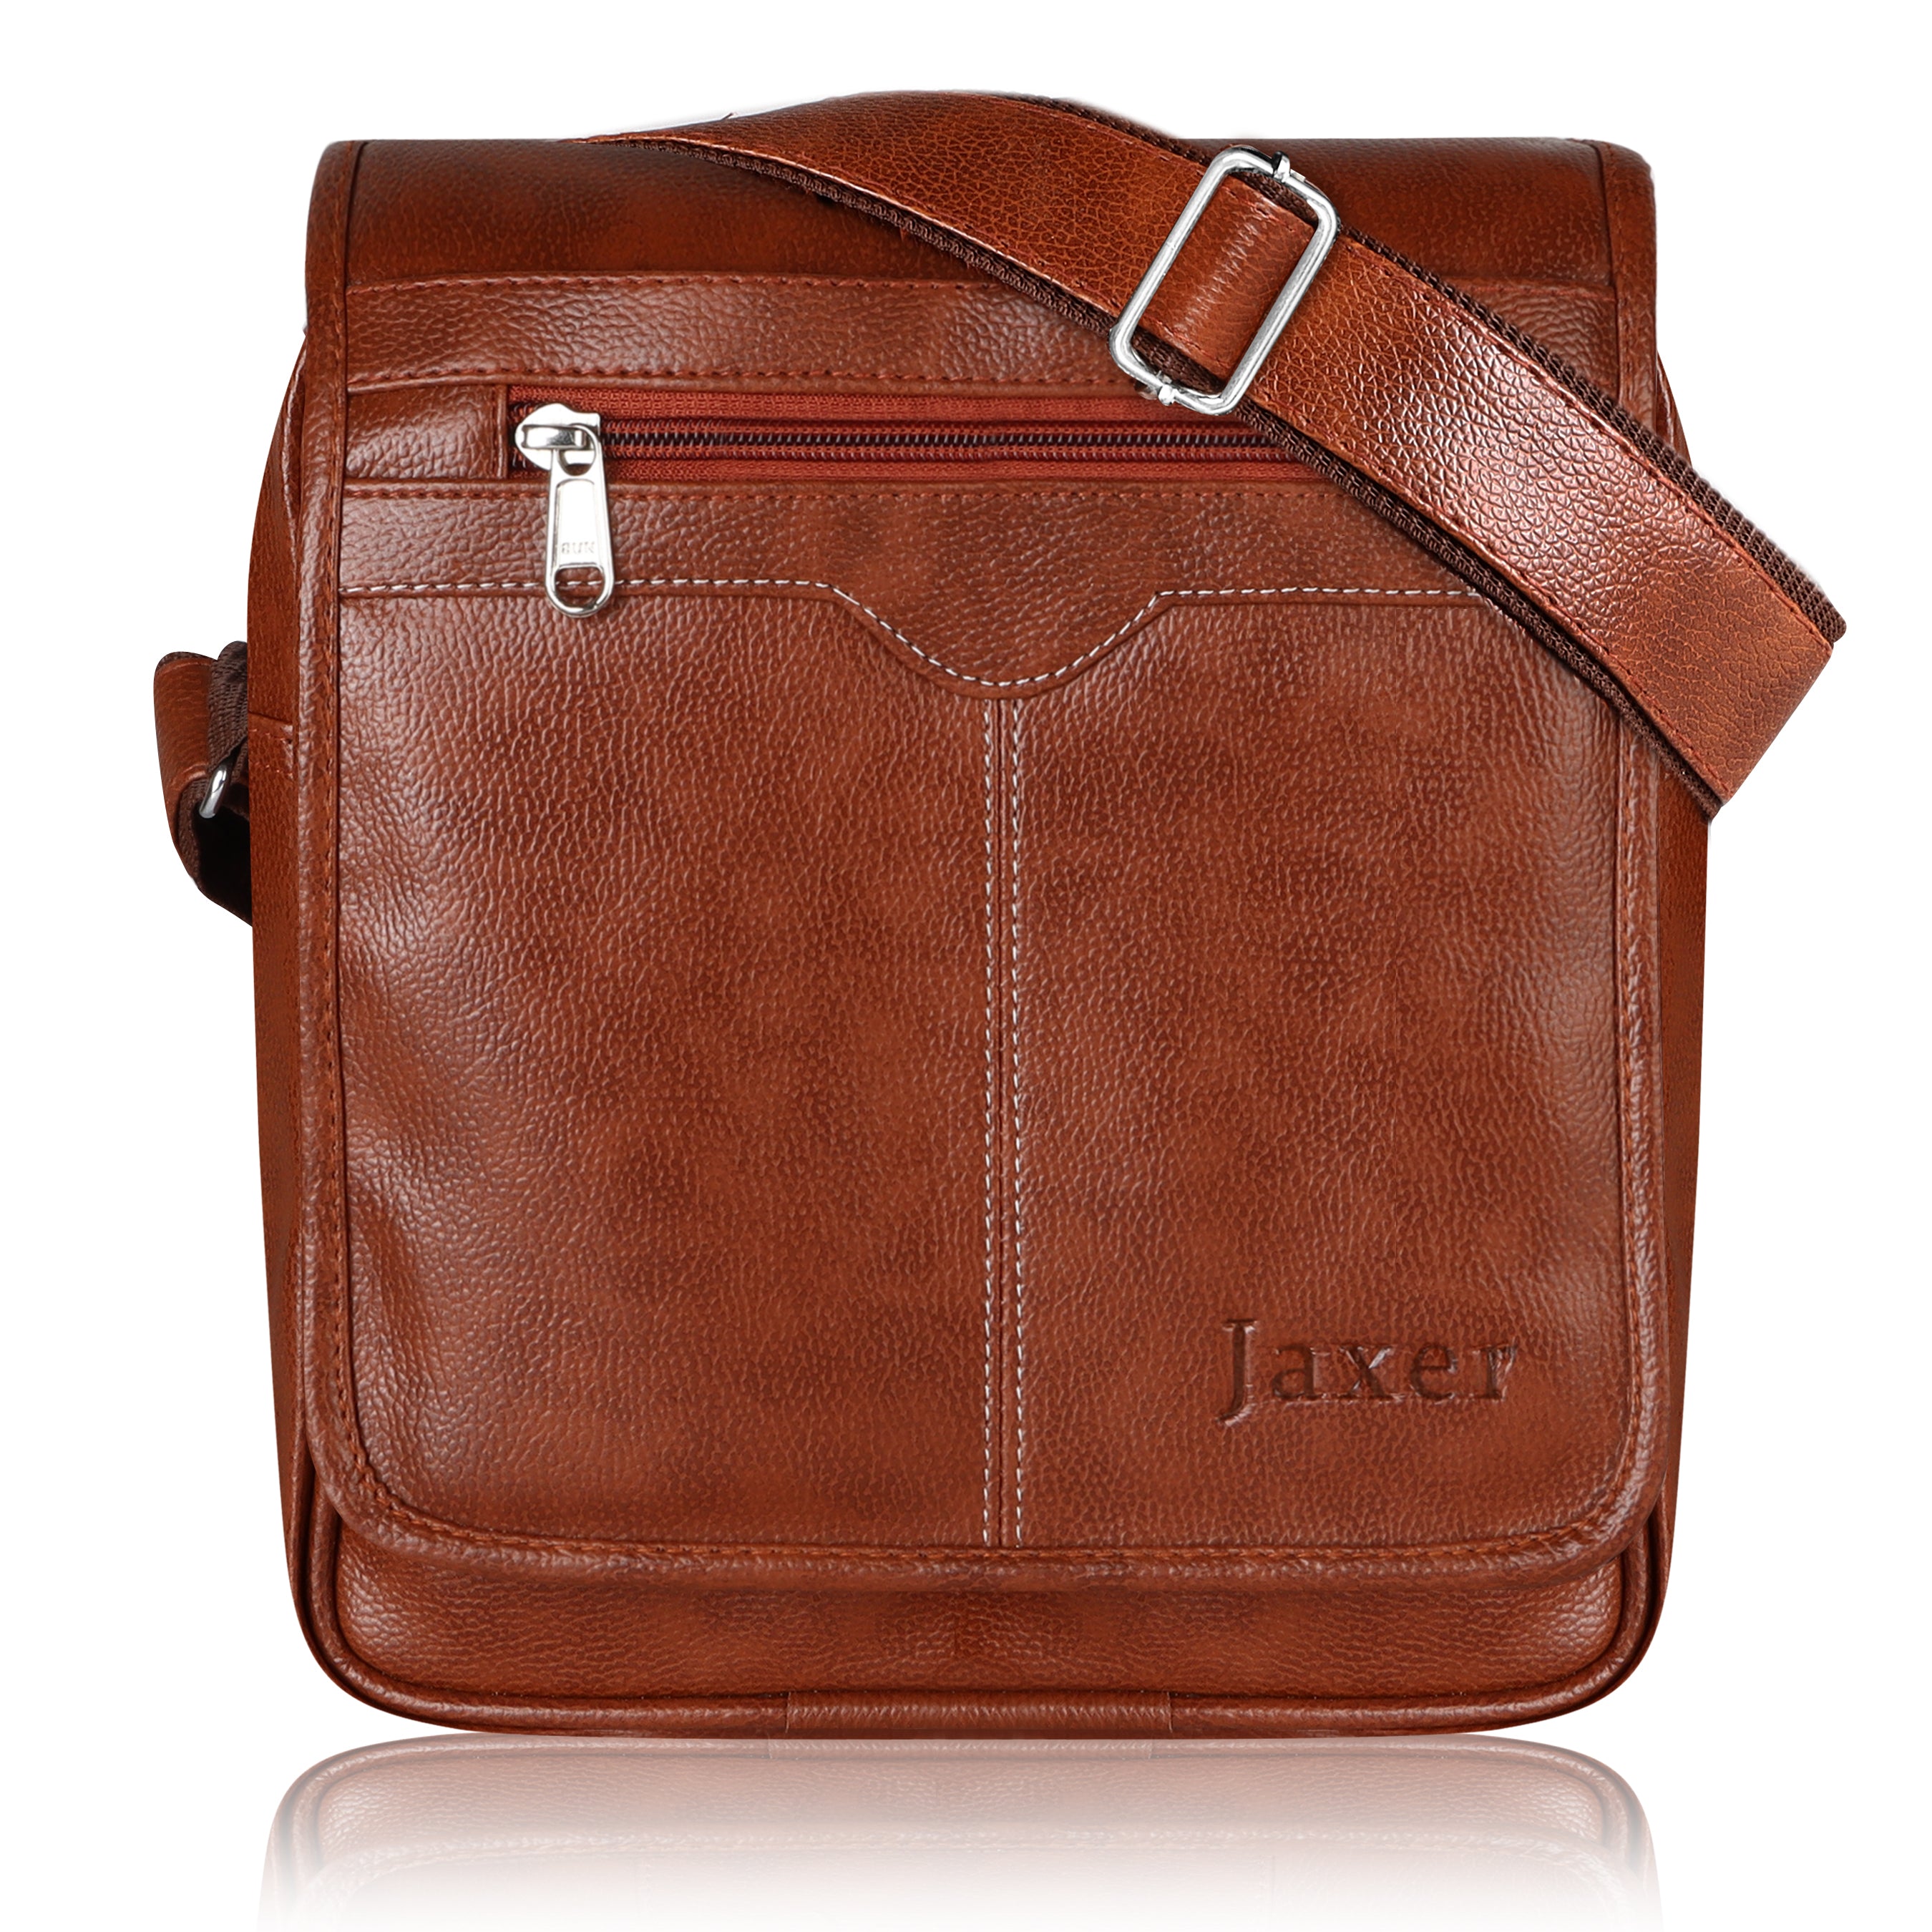 Jaxer Tan Sling Bag for Men & Women - JXRSB103 - Jainx Store